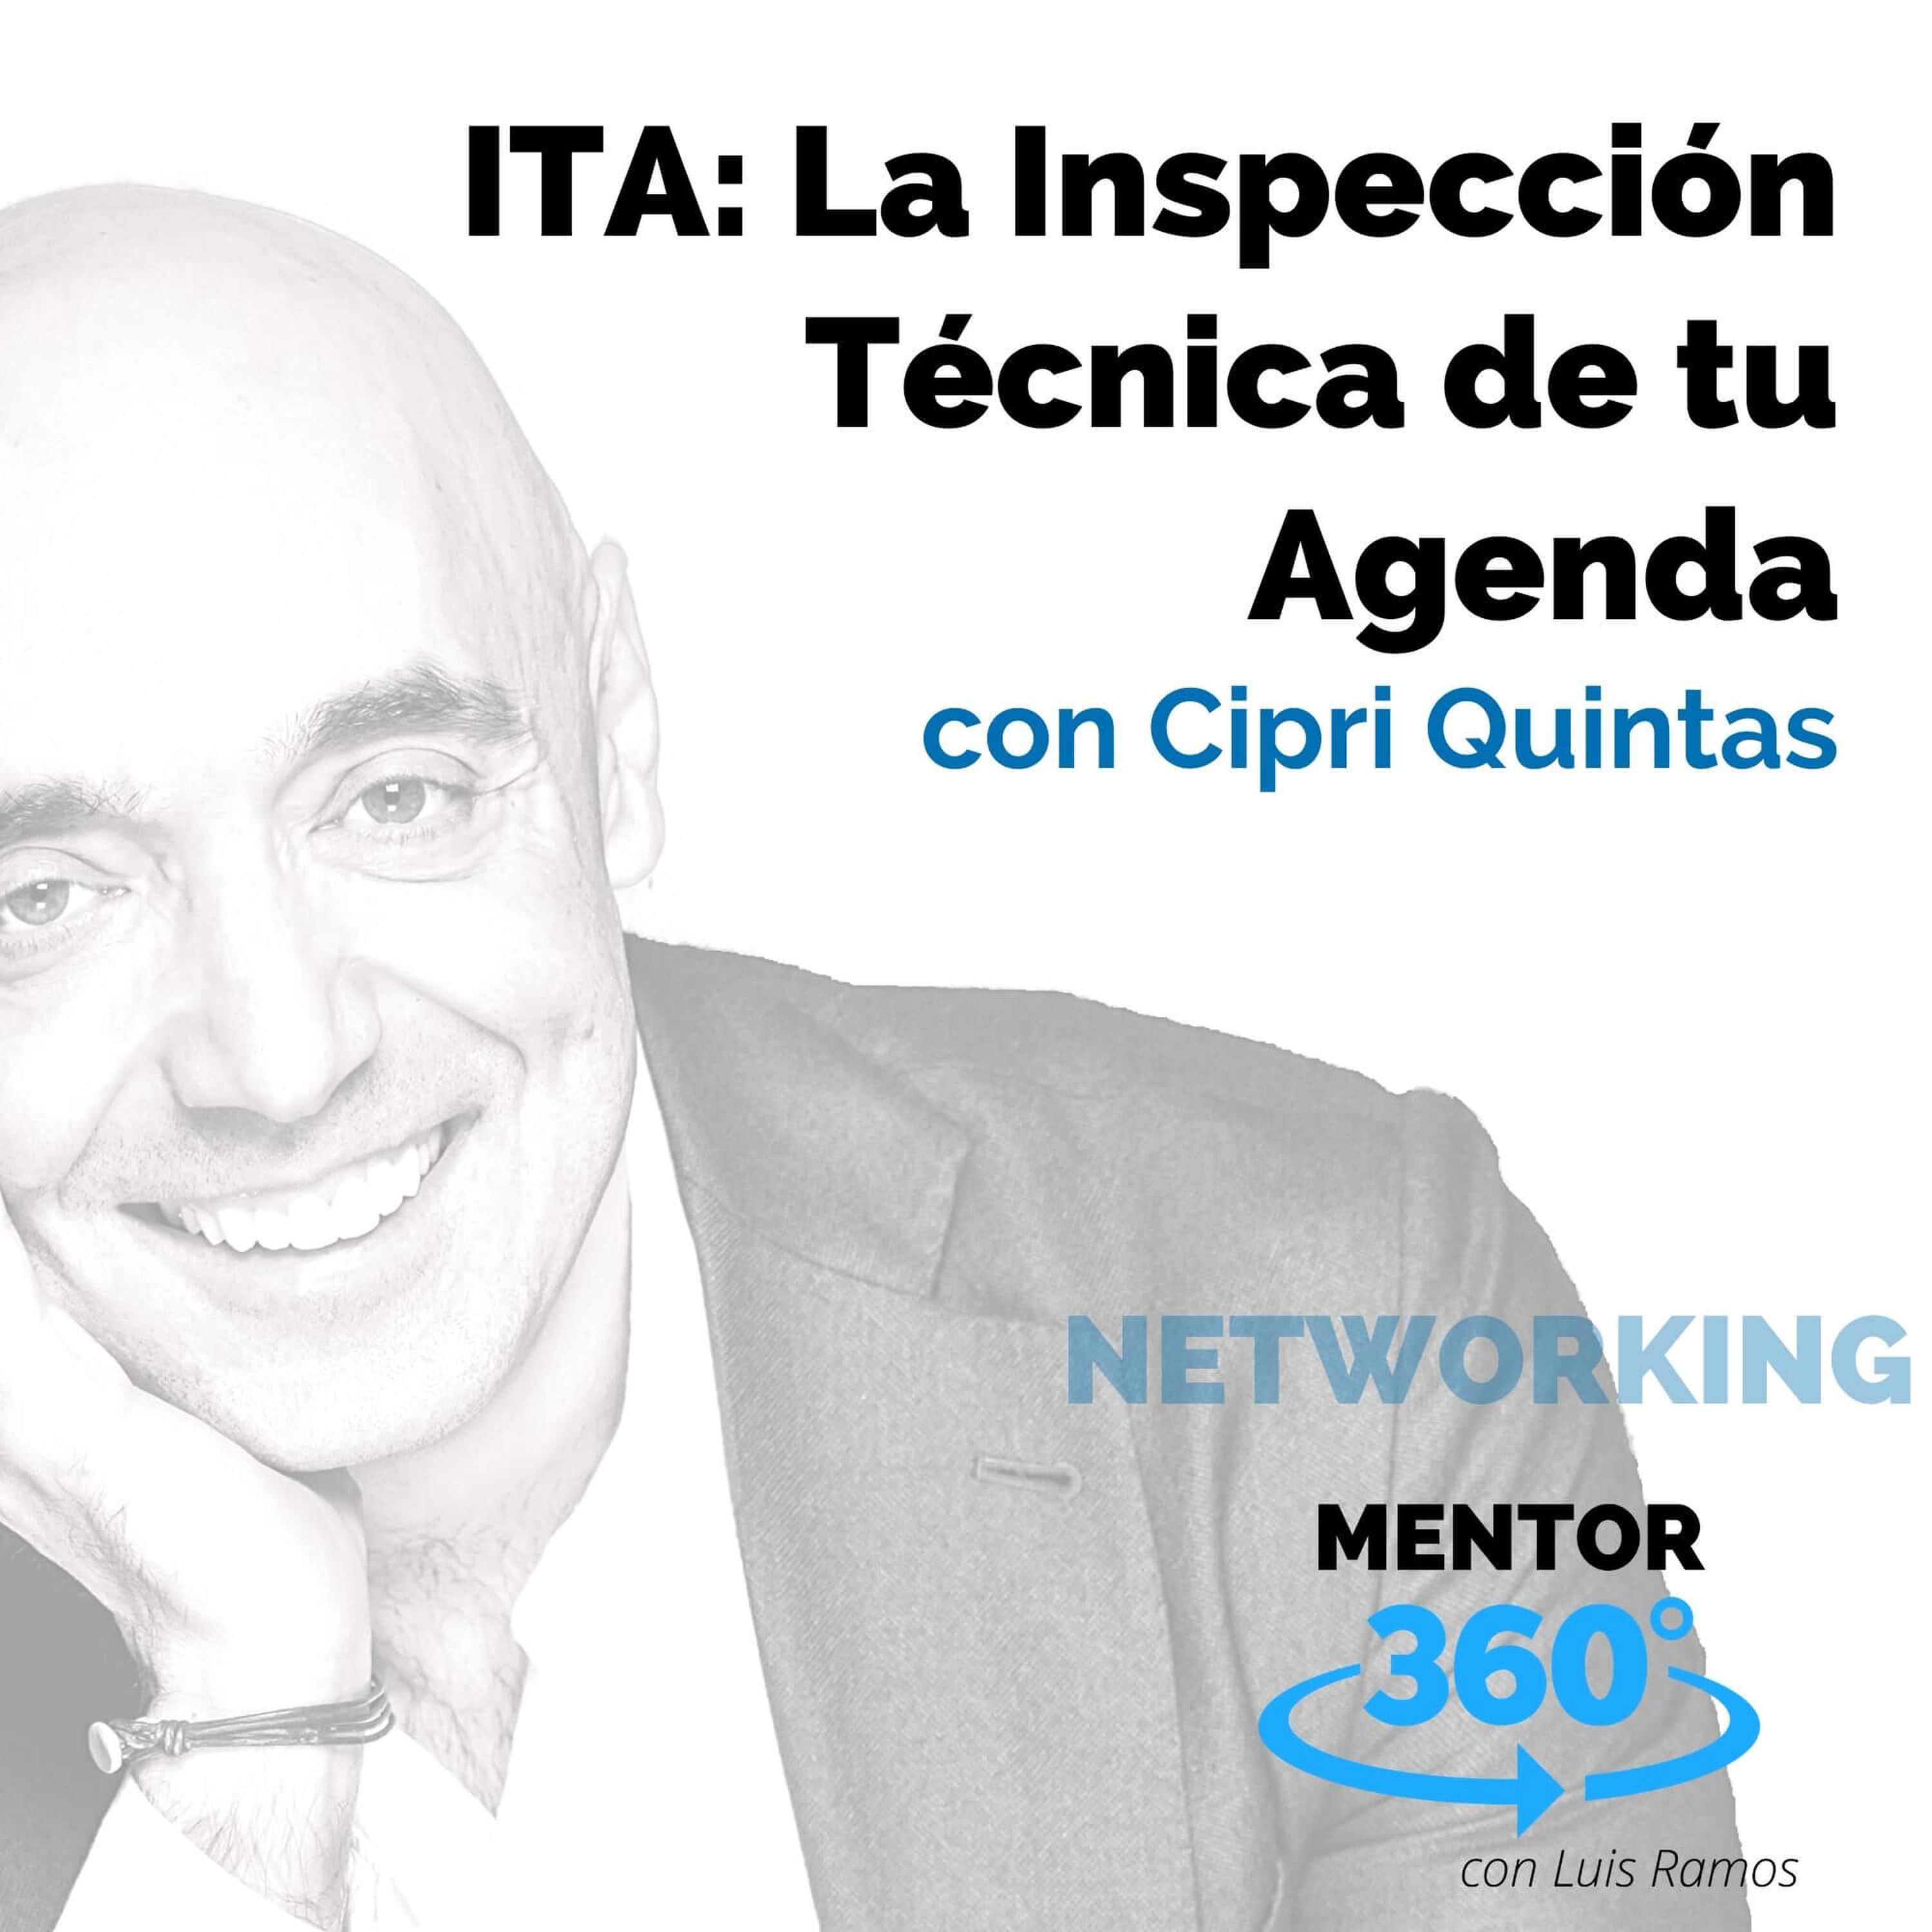 ITA: La Inspección Técnica de tu Agenda, con Cipri Quintas - NETWORKING